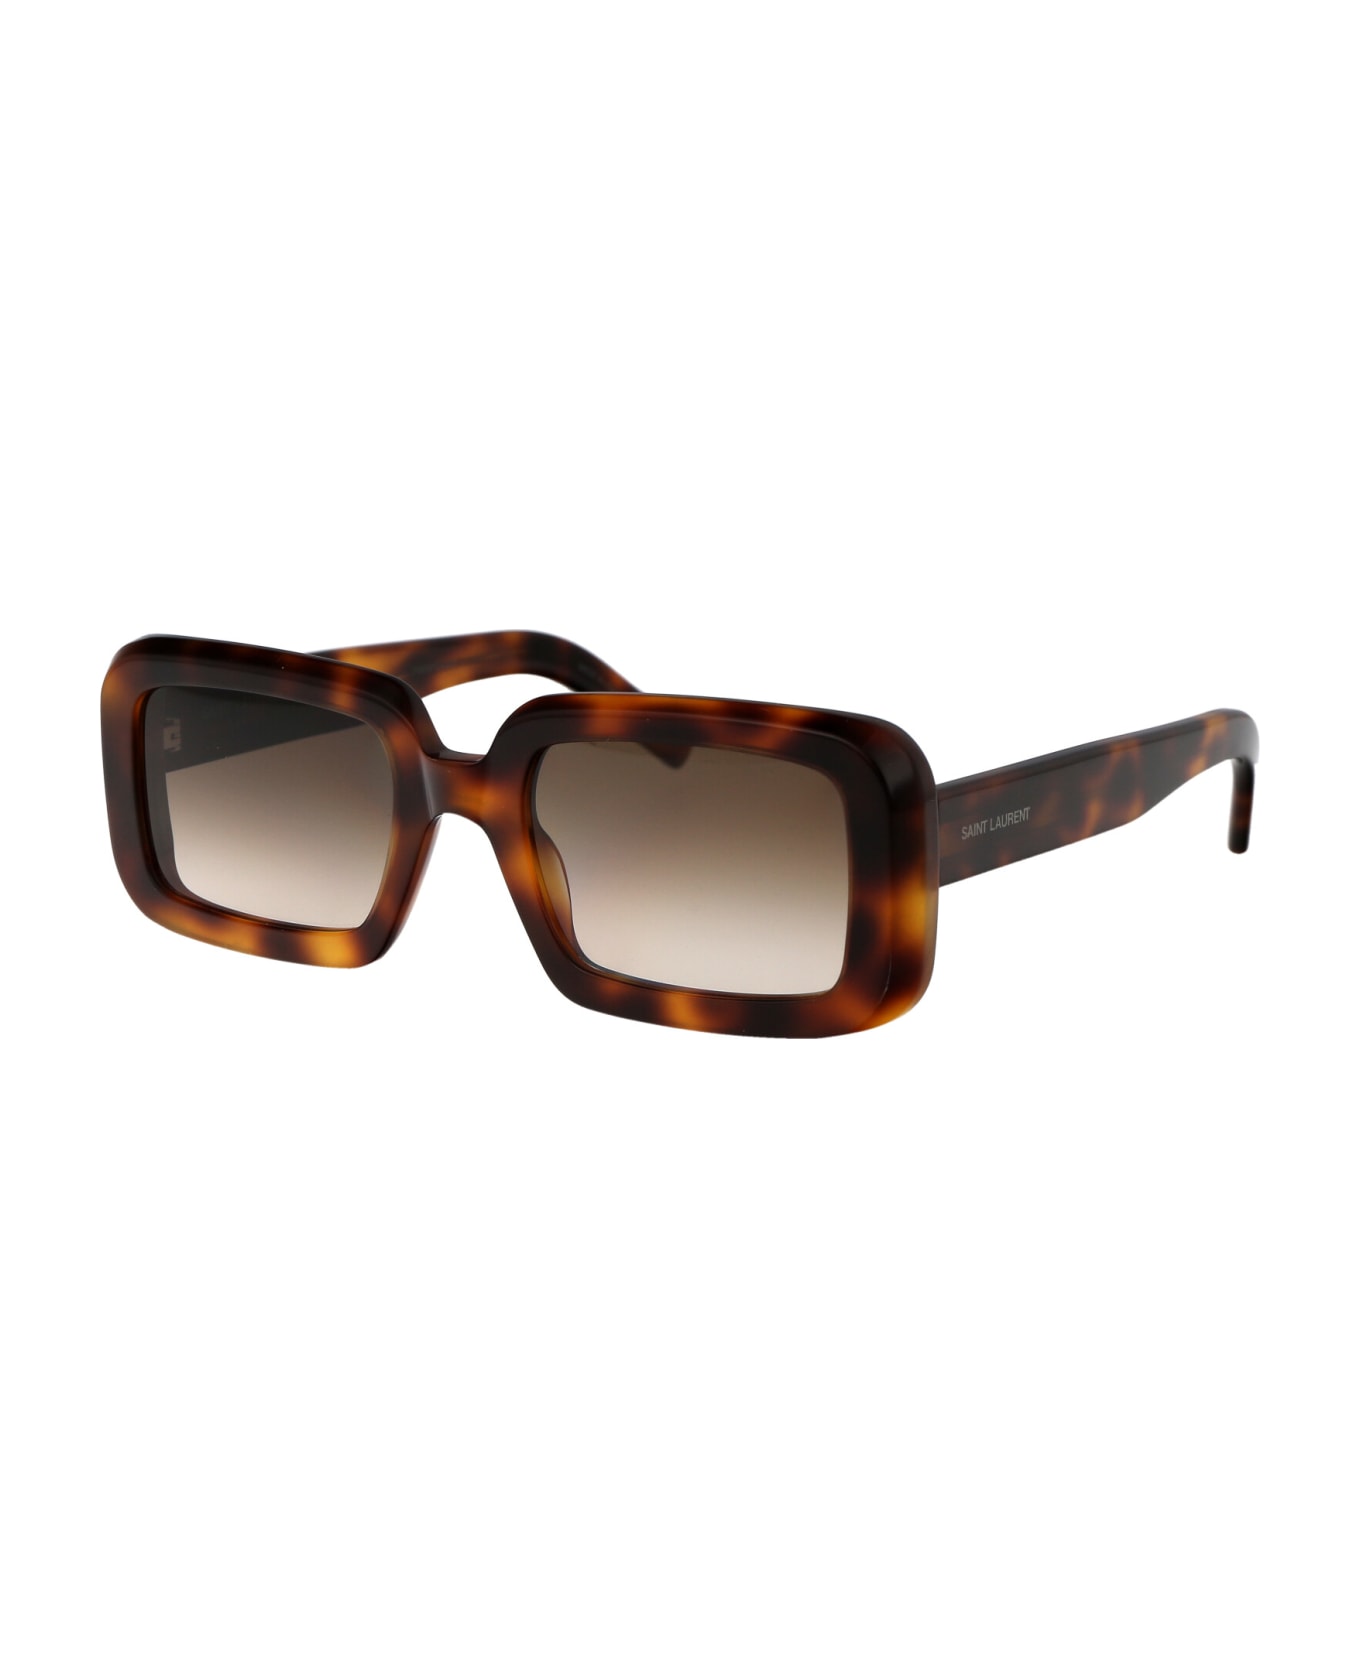 Saint Laurent Eyewear Sl 534 Sunrise Sunglasses - 012 HAVANA HAVANA BROWN サングラス